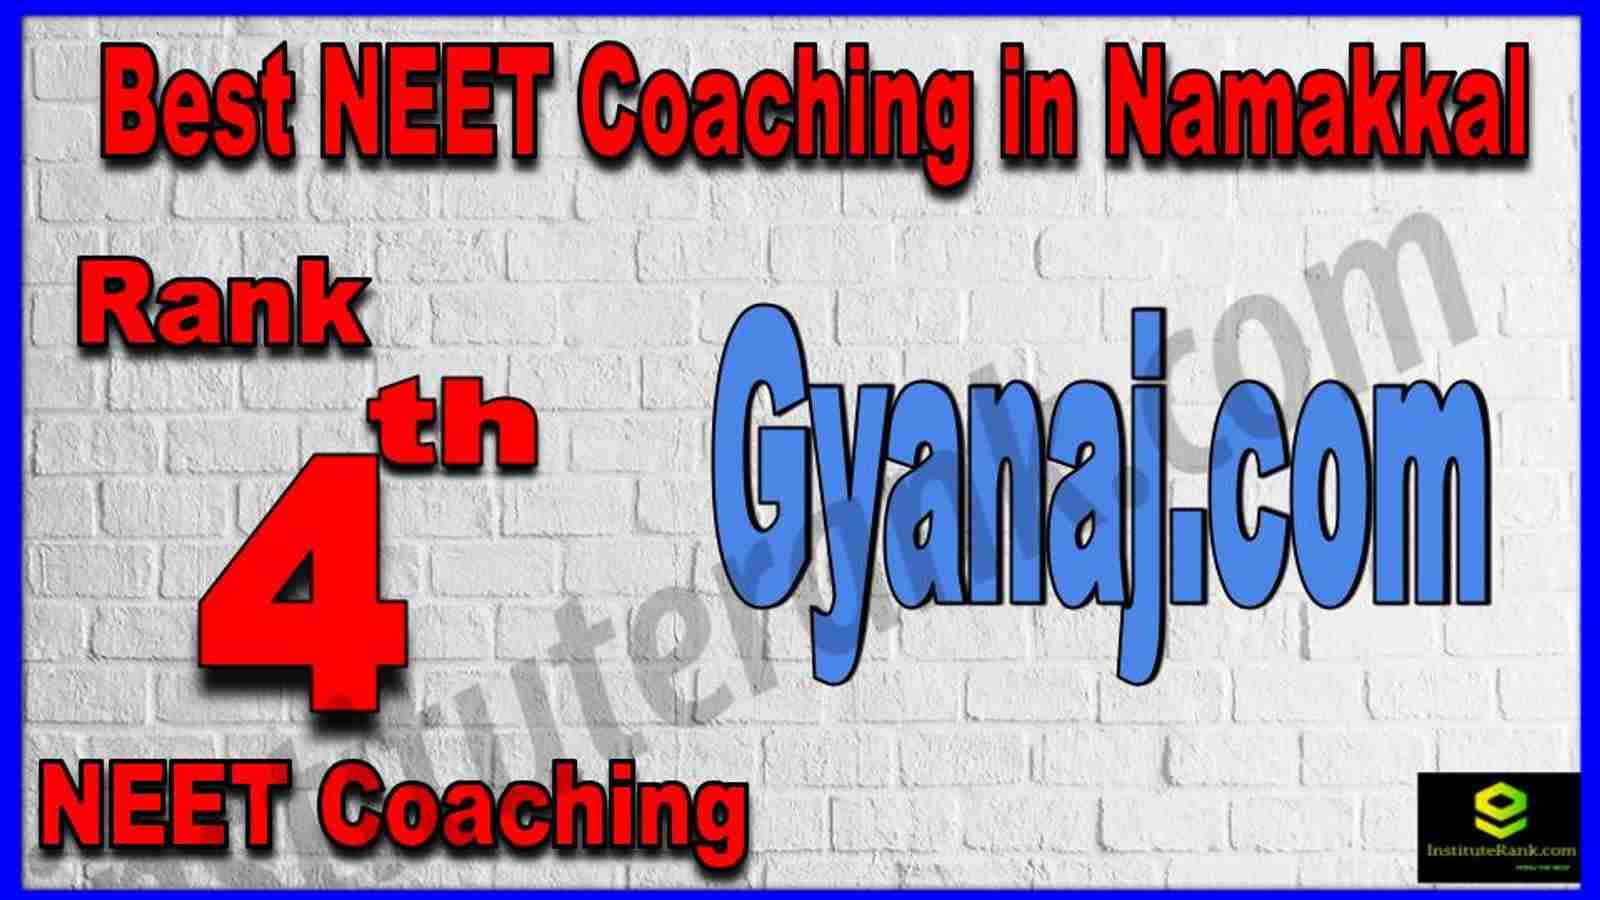 Rank 4th Best NEET Coaching in Namakkal